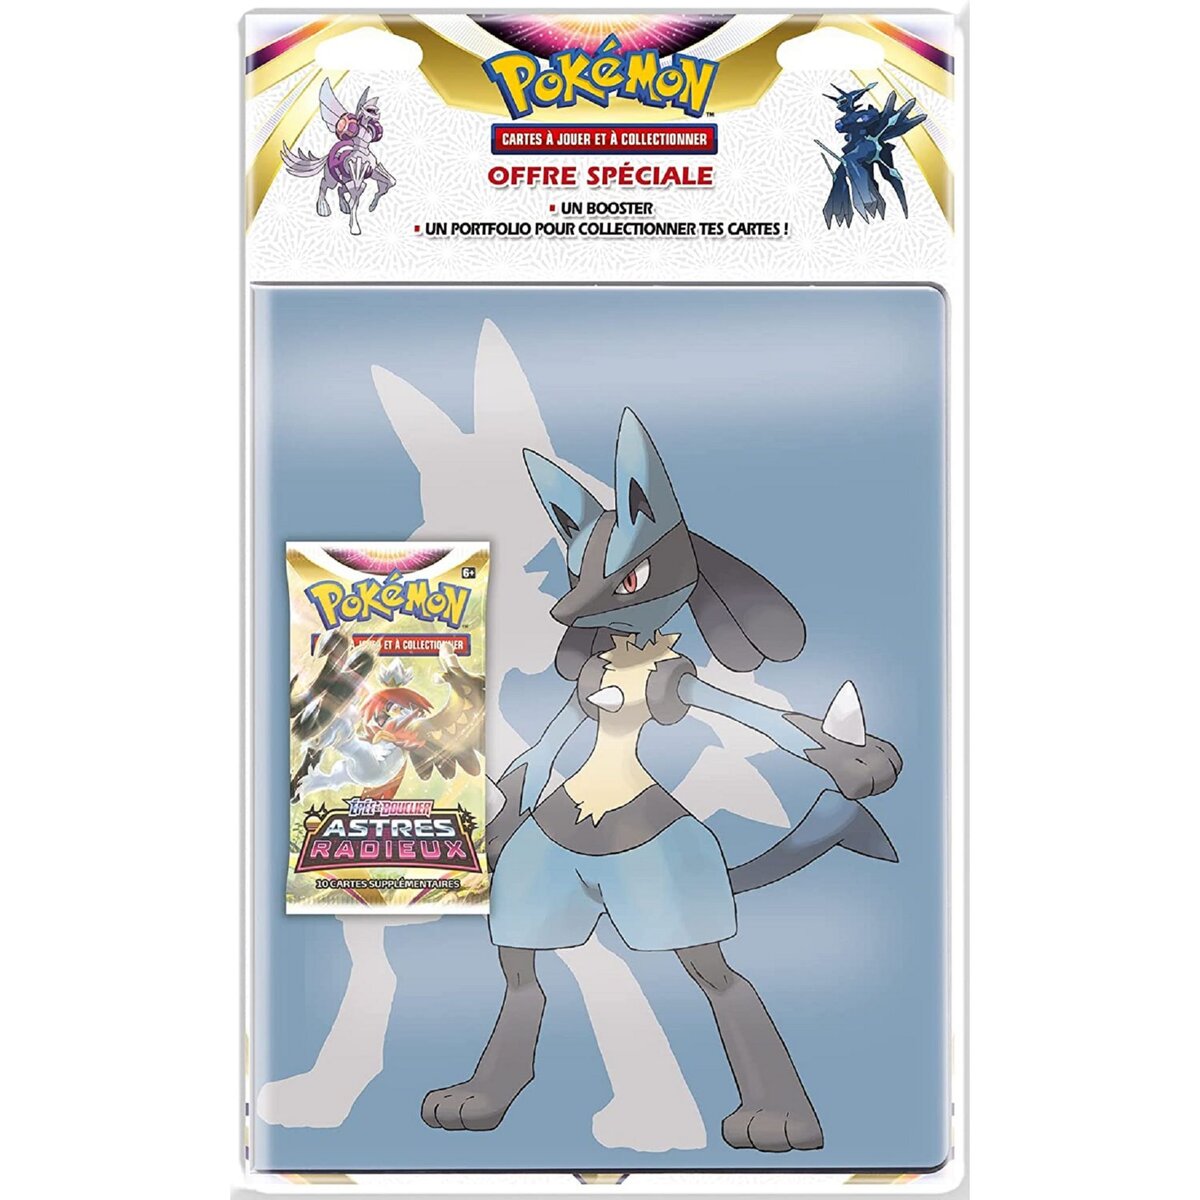 POKEMON Pokémon EB10 Pack Booster + Portfolio A4 180 cartes